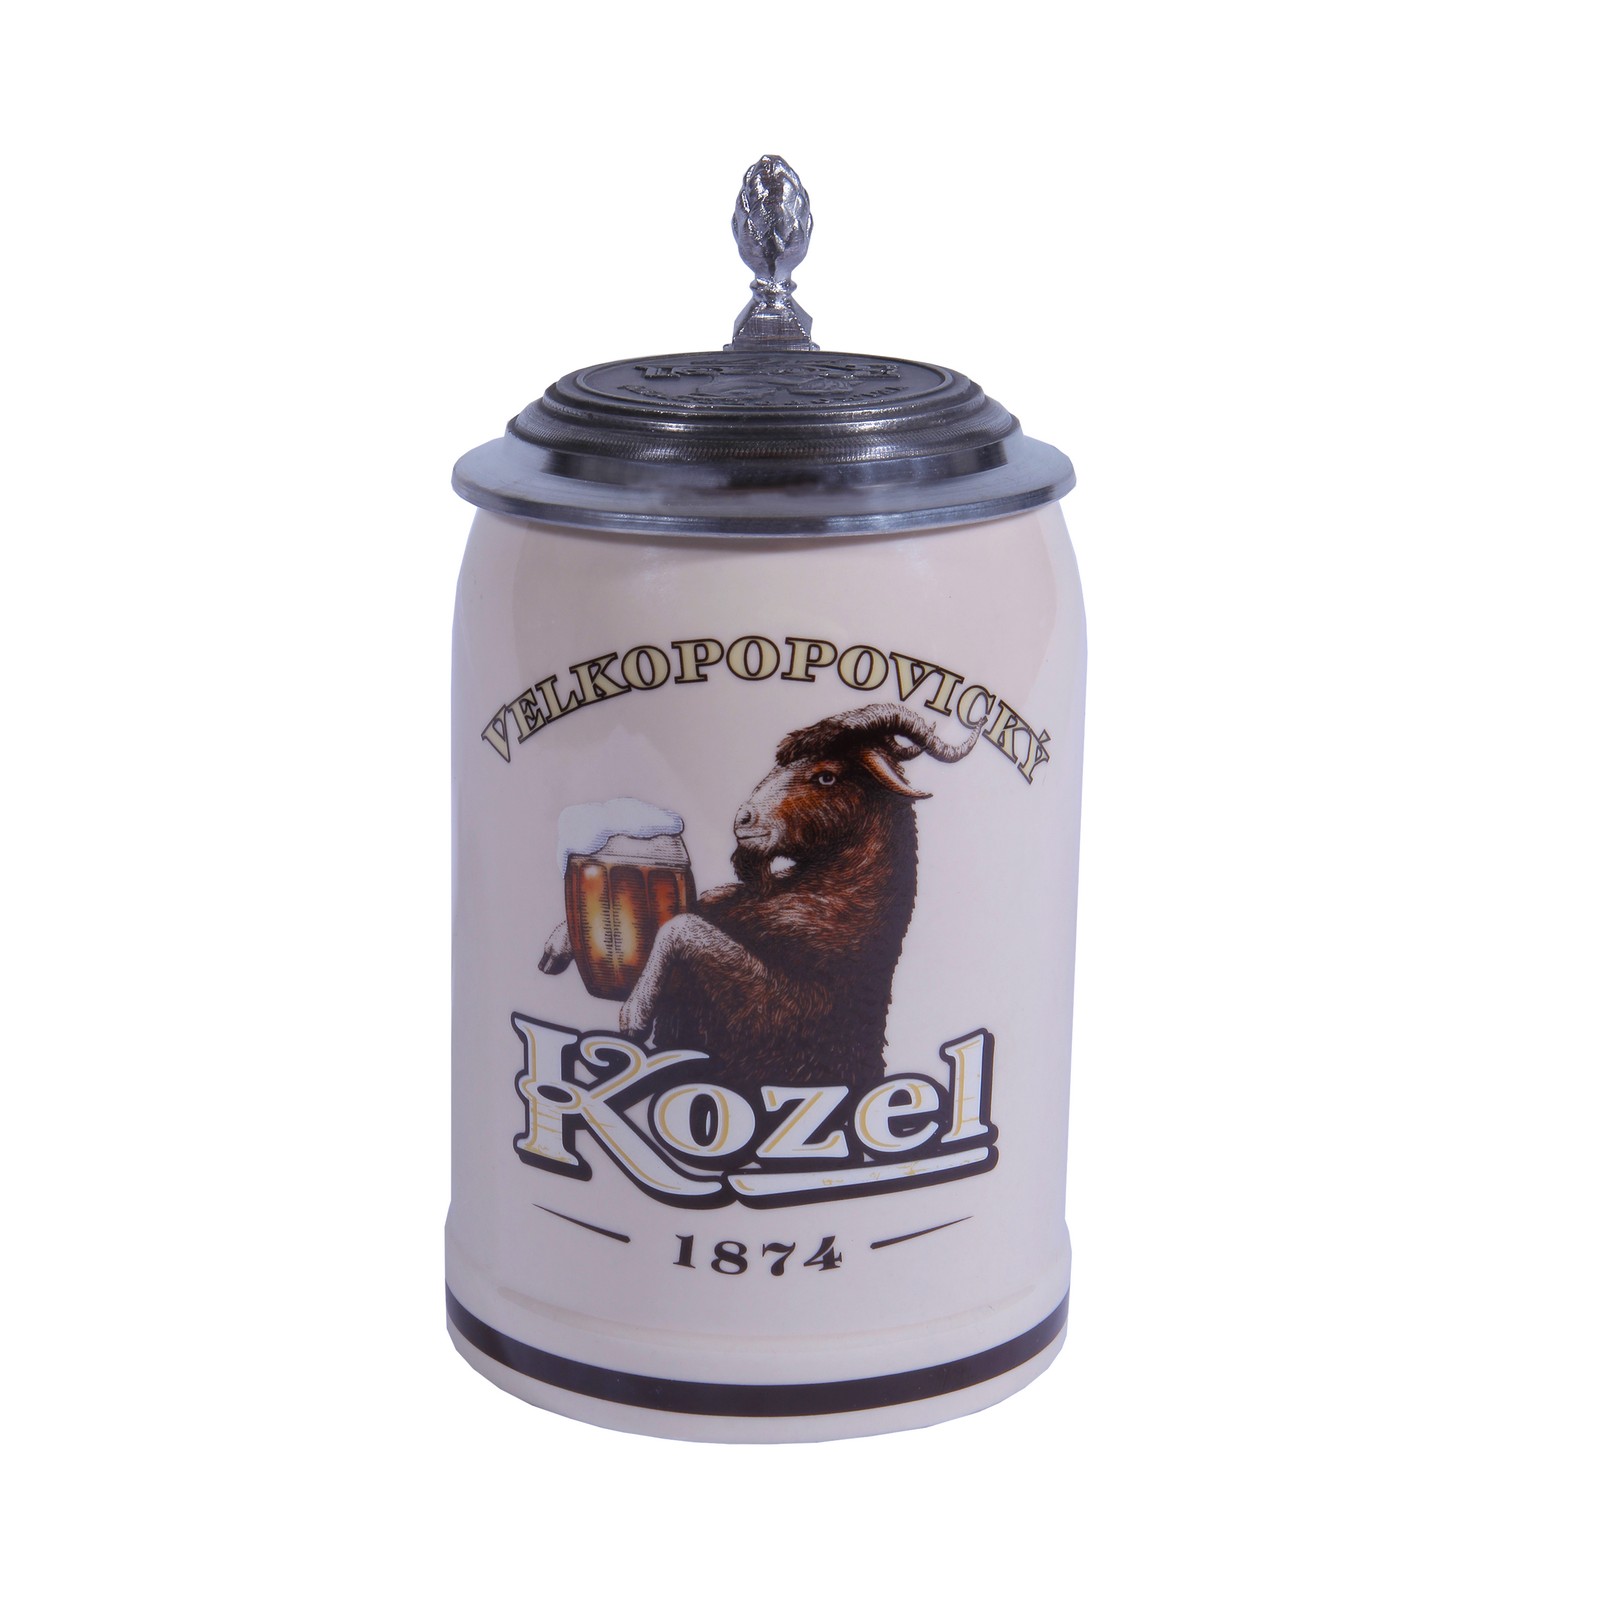 Dark Kozel beer pitcher with lid